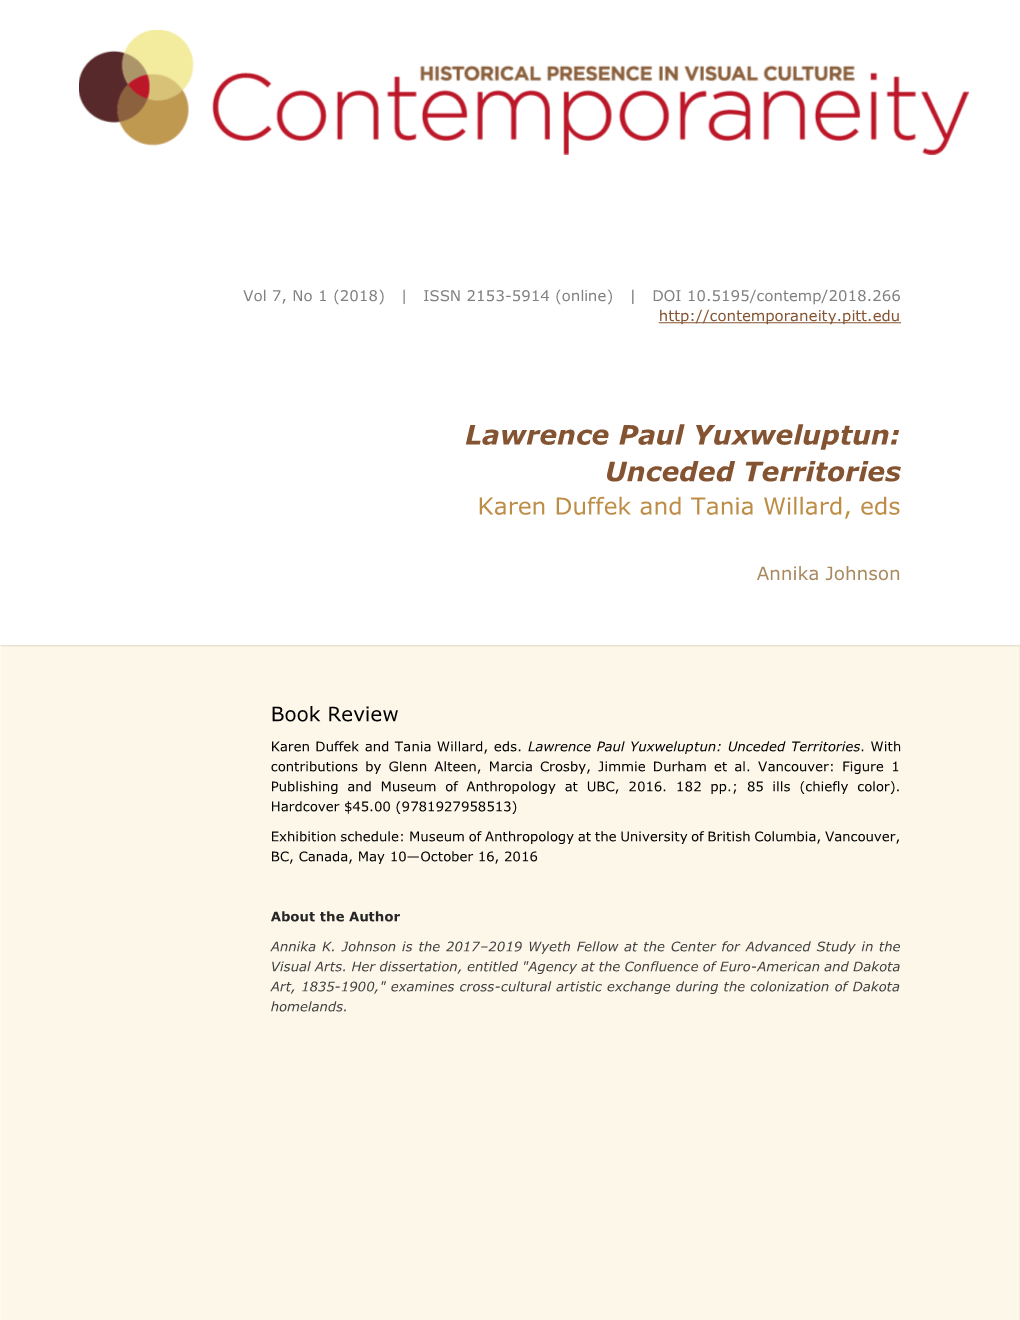 Lawrence Paul Yuxweluptun: Unceded Territories Karen Duffek and Tania Willard, Eds